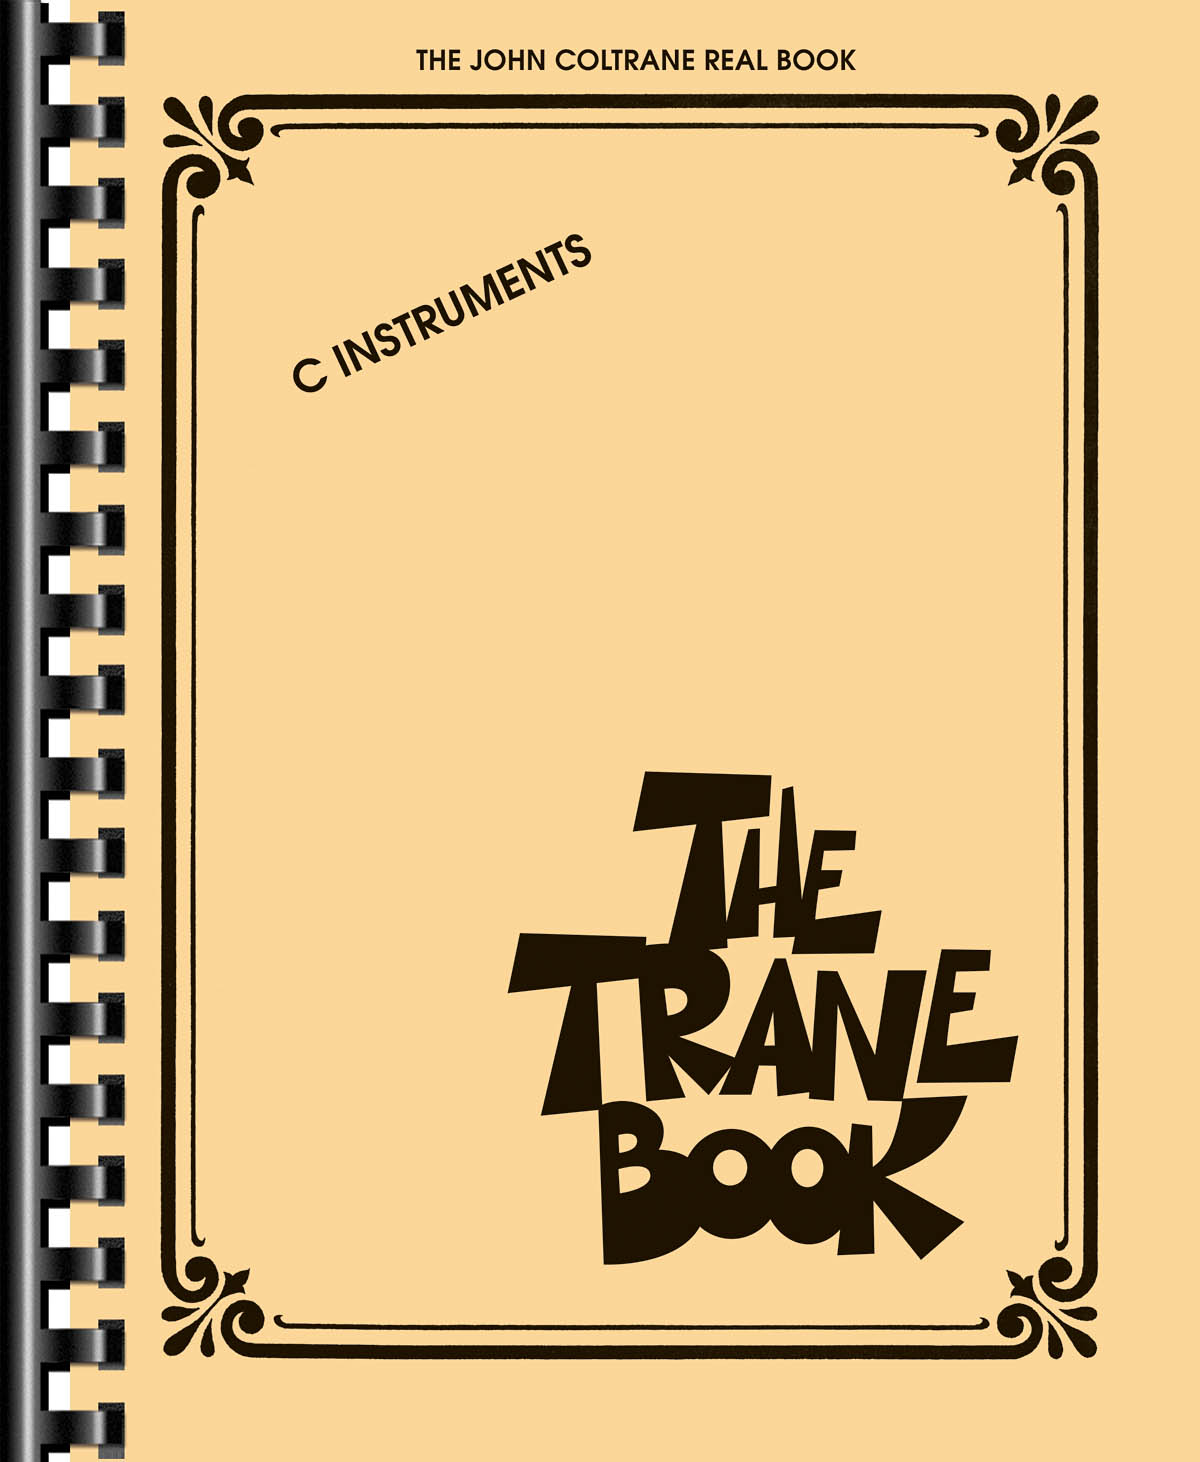 The Trane Book - The John Coltrane Real Book - melodie s akordy pro nástroje v ladění C